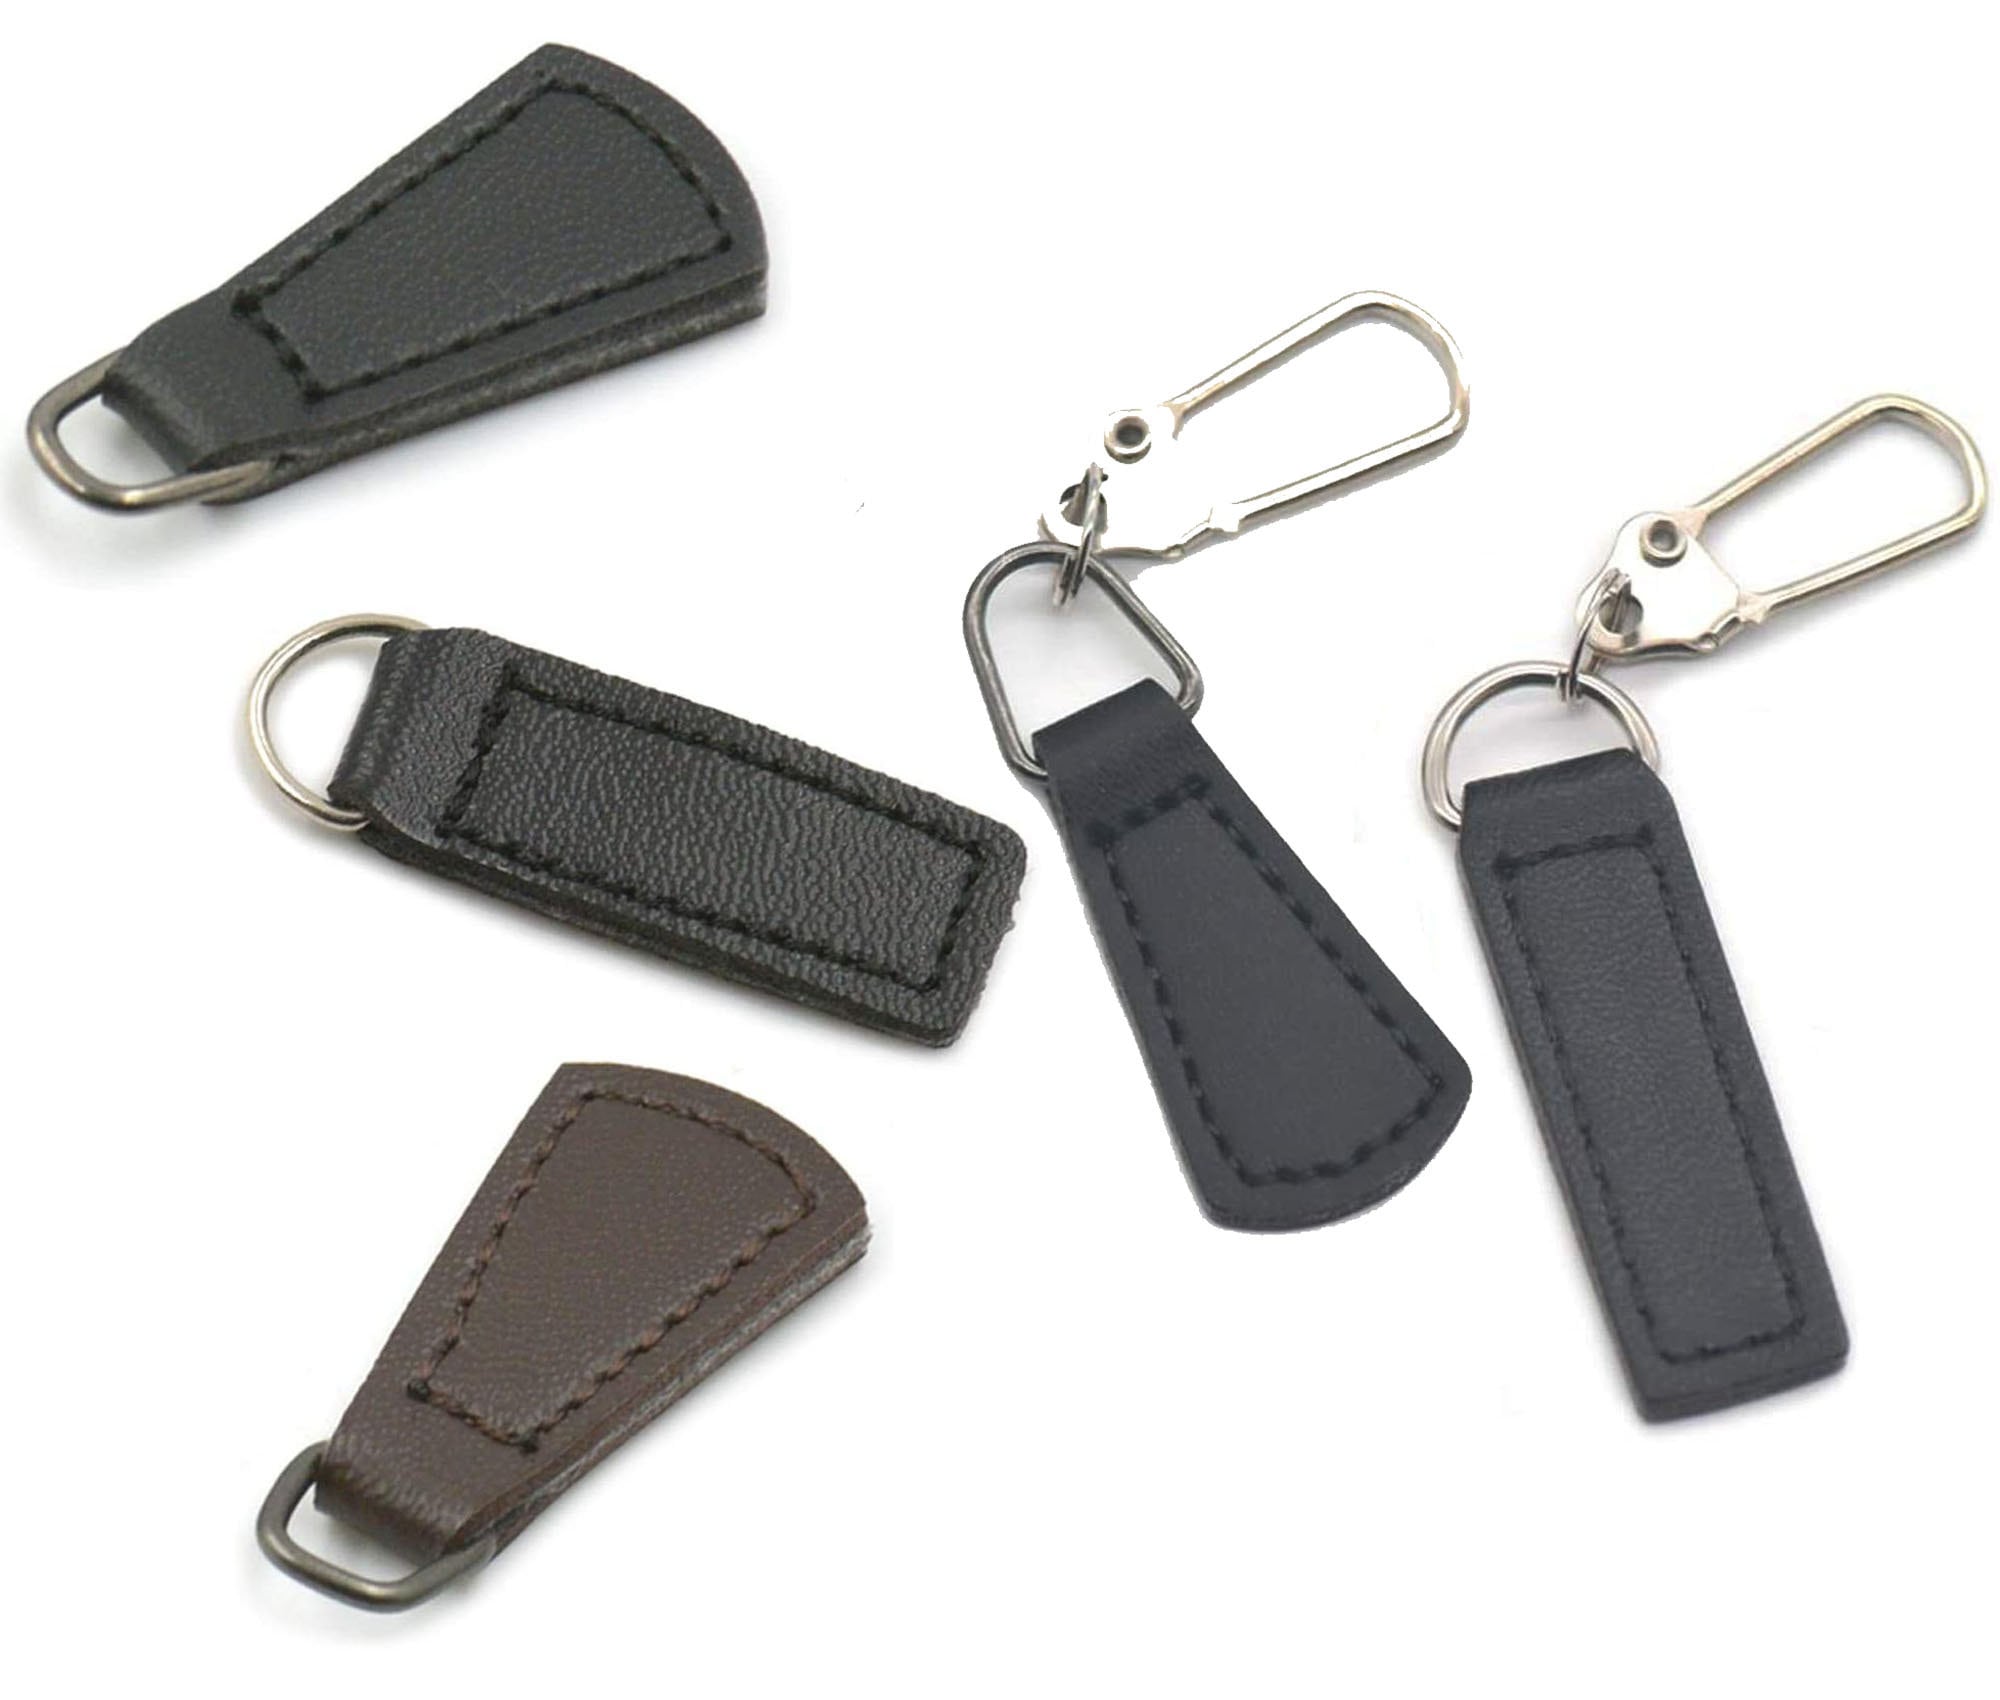 5/1Pcs Zipper Slider Pull Tab Replacement Zipper Repair Kit Metal